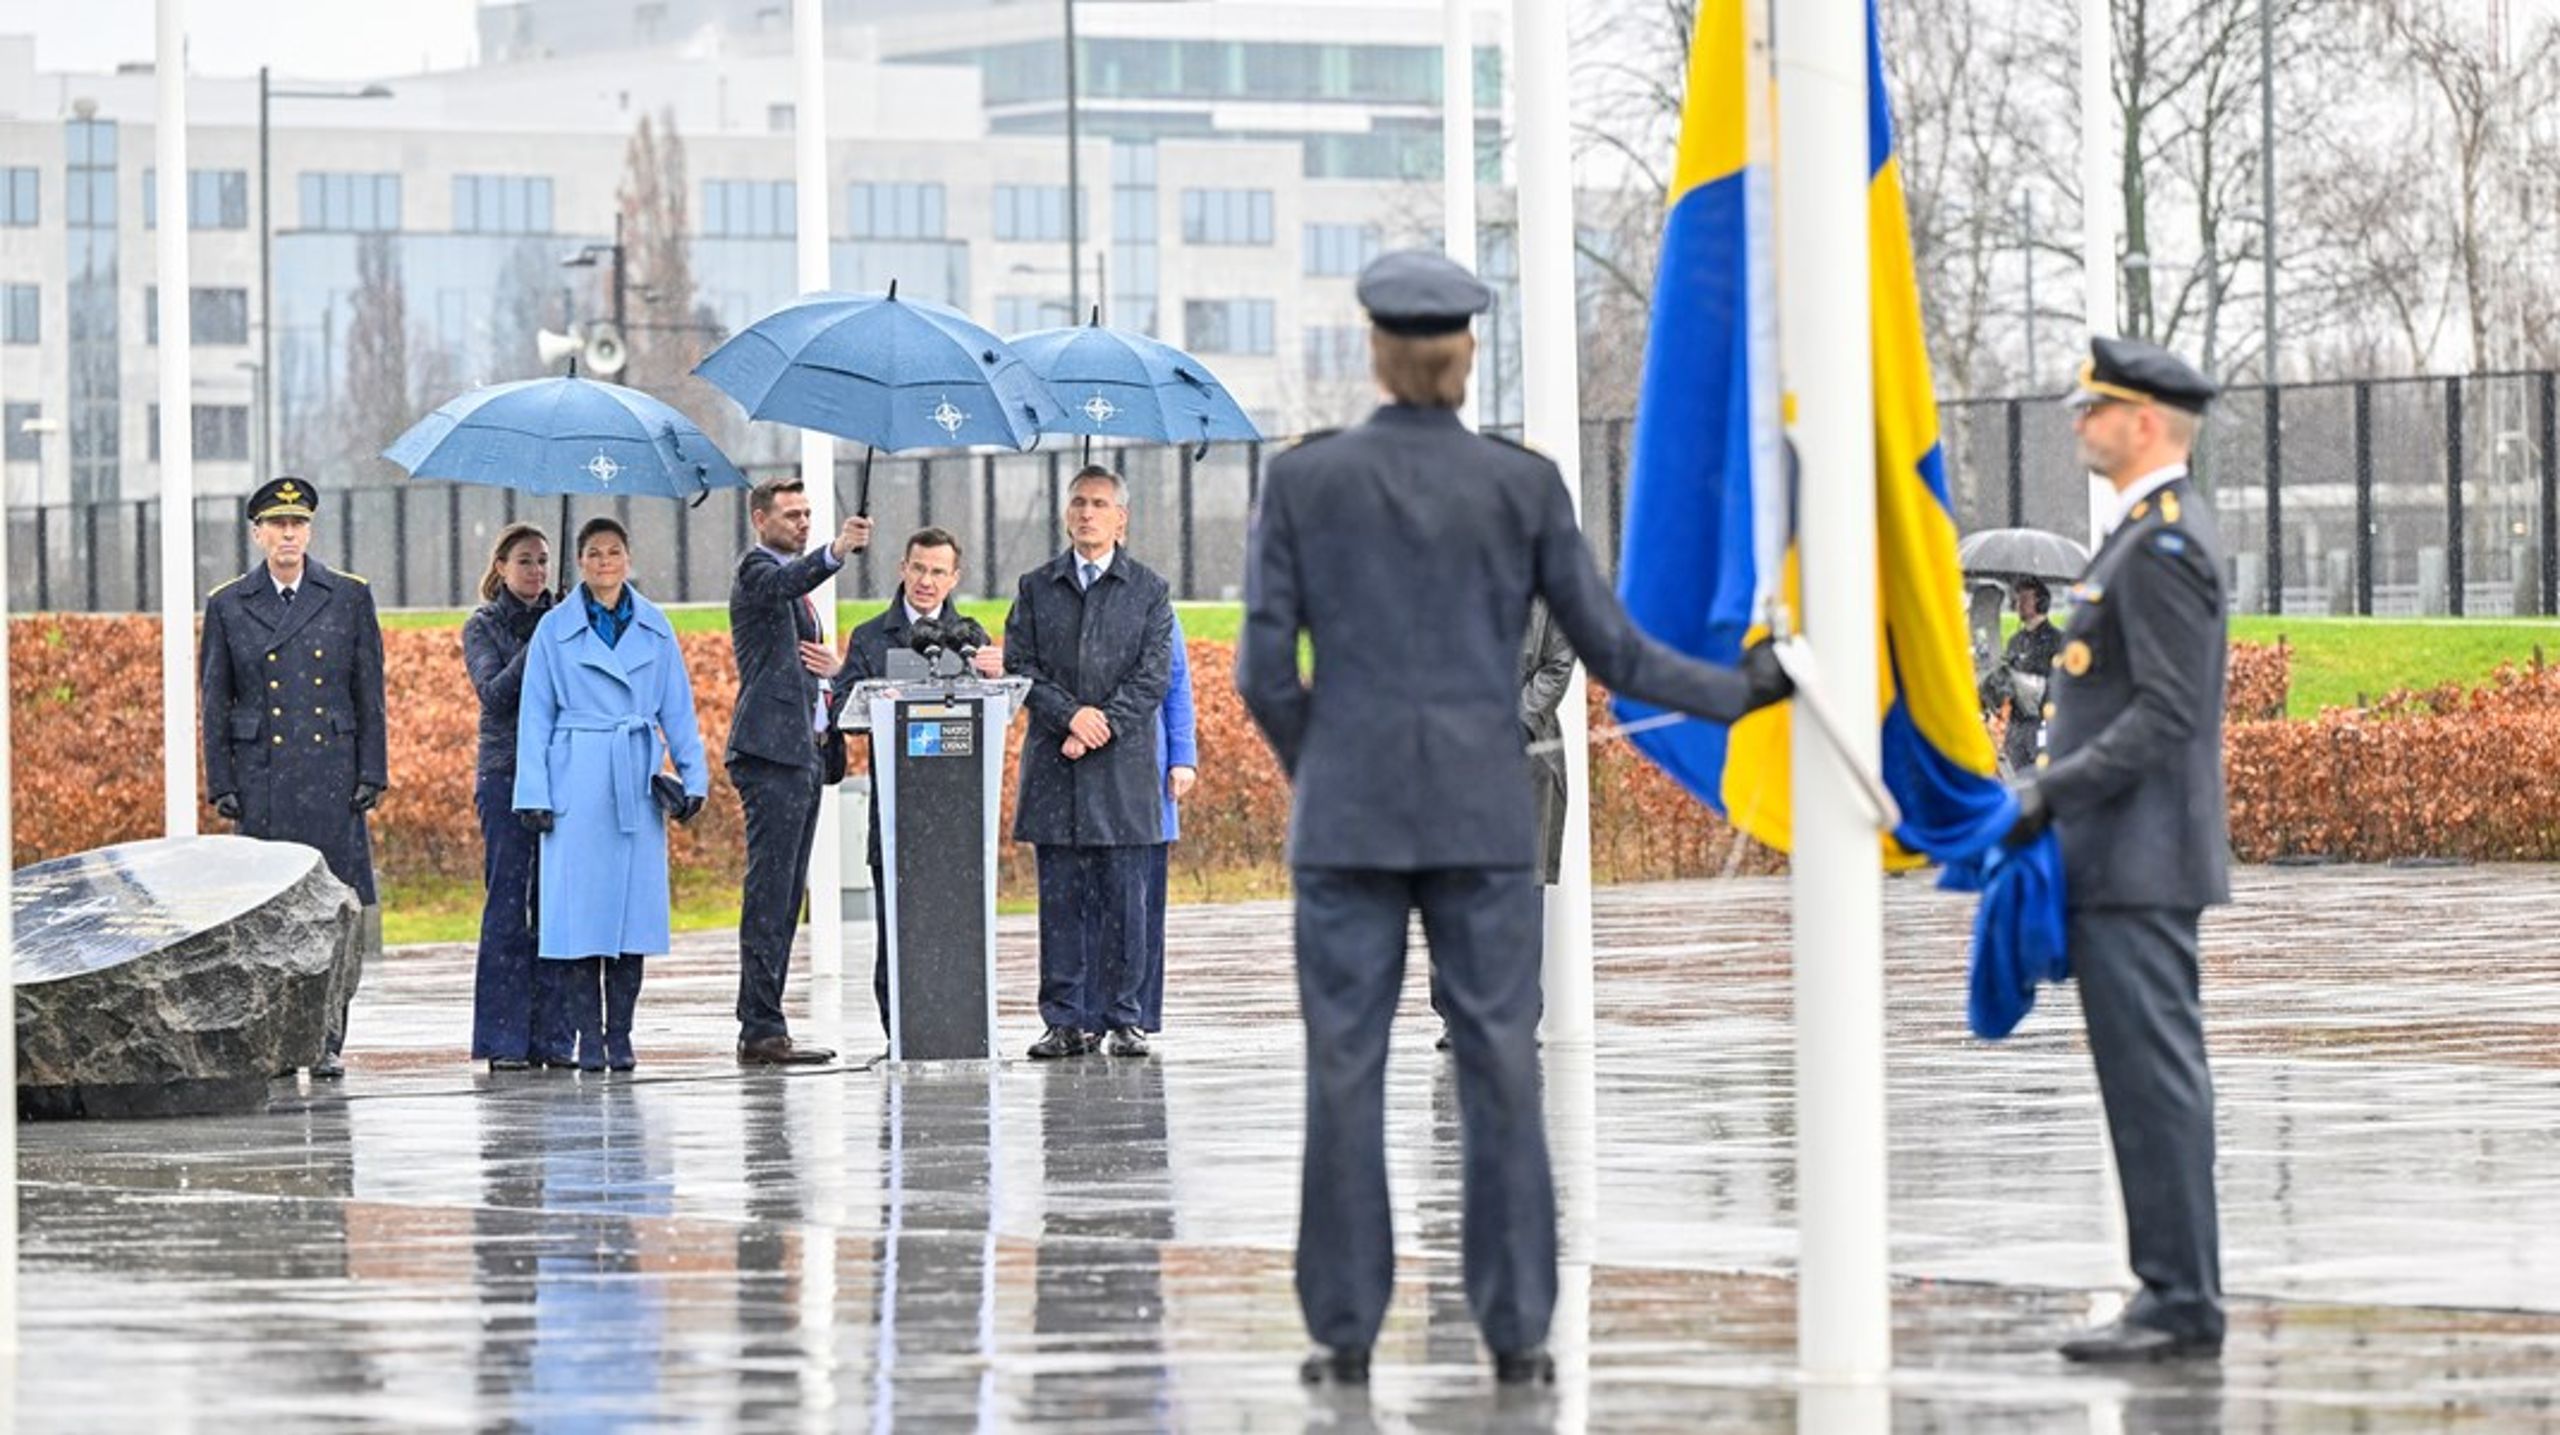 Ingen solskenshistoria. Vädrets makter var inte med Sverige och Nato denna historiska dag.